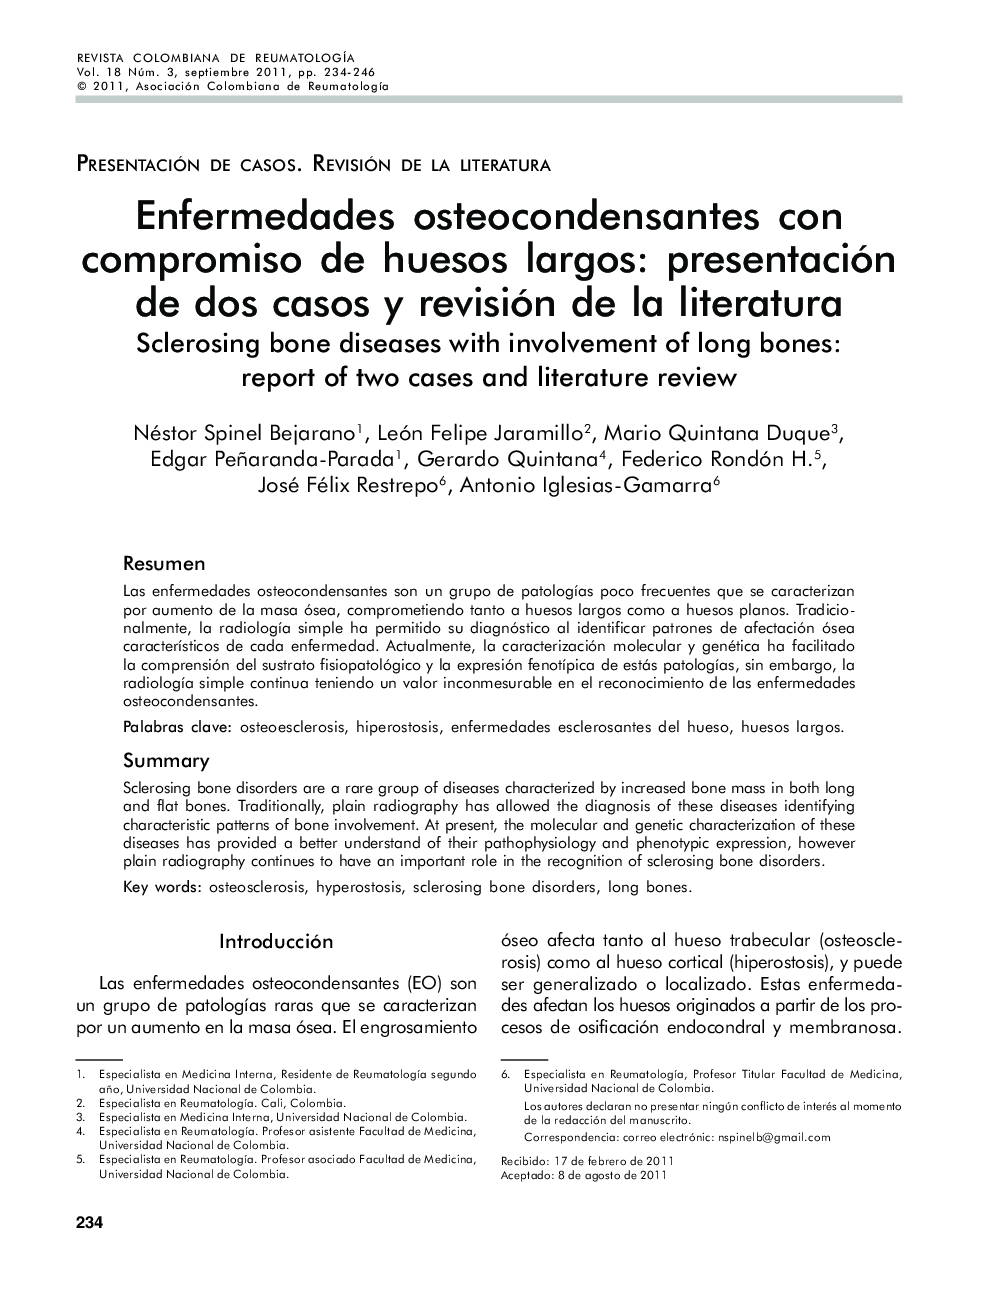 Enfermedades osteocondensantes con compromiso de huesos largos: presentación de dos casos y revisión de la literatura